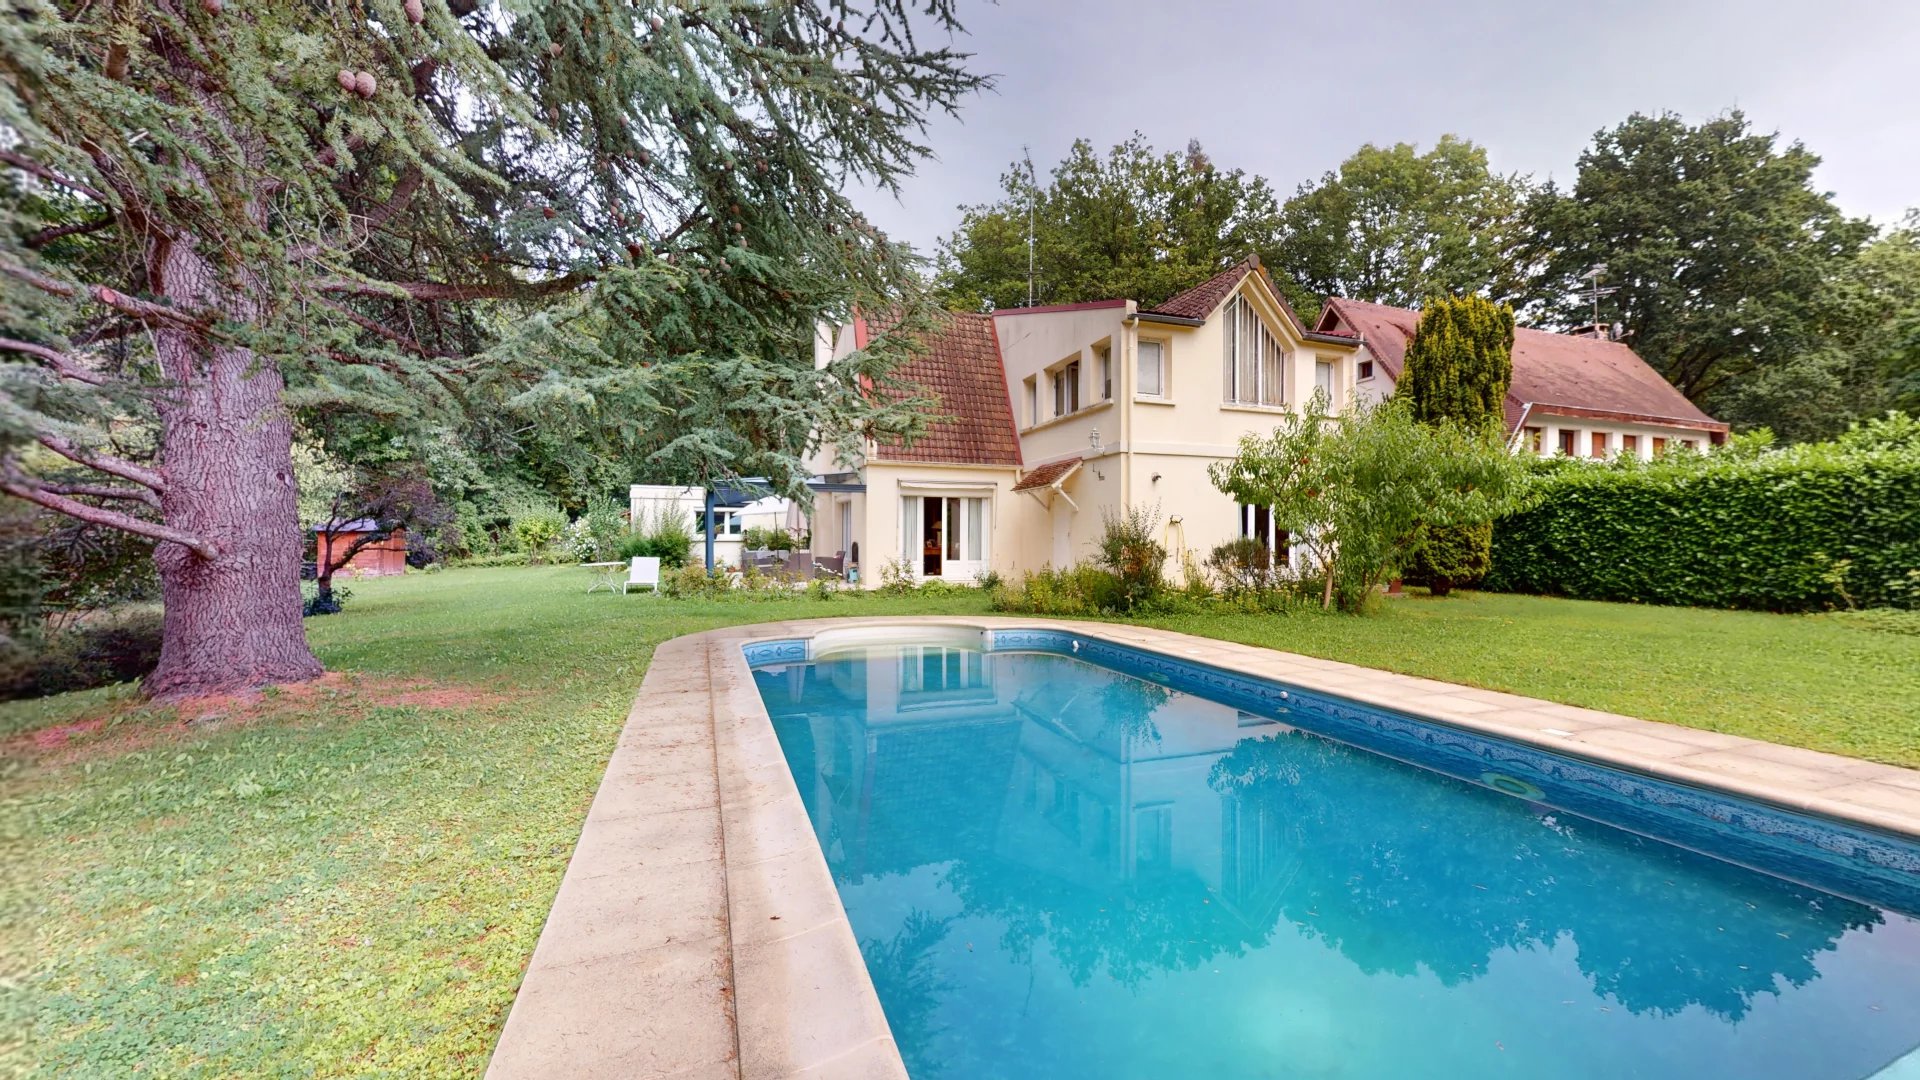 Maison Familiale avec piscine à Dampierre.